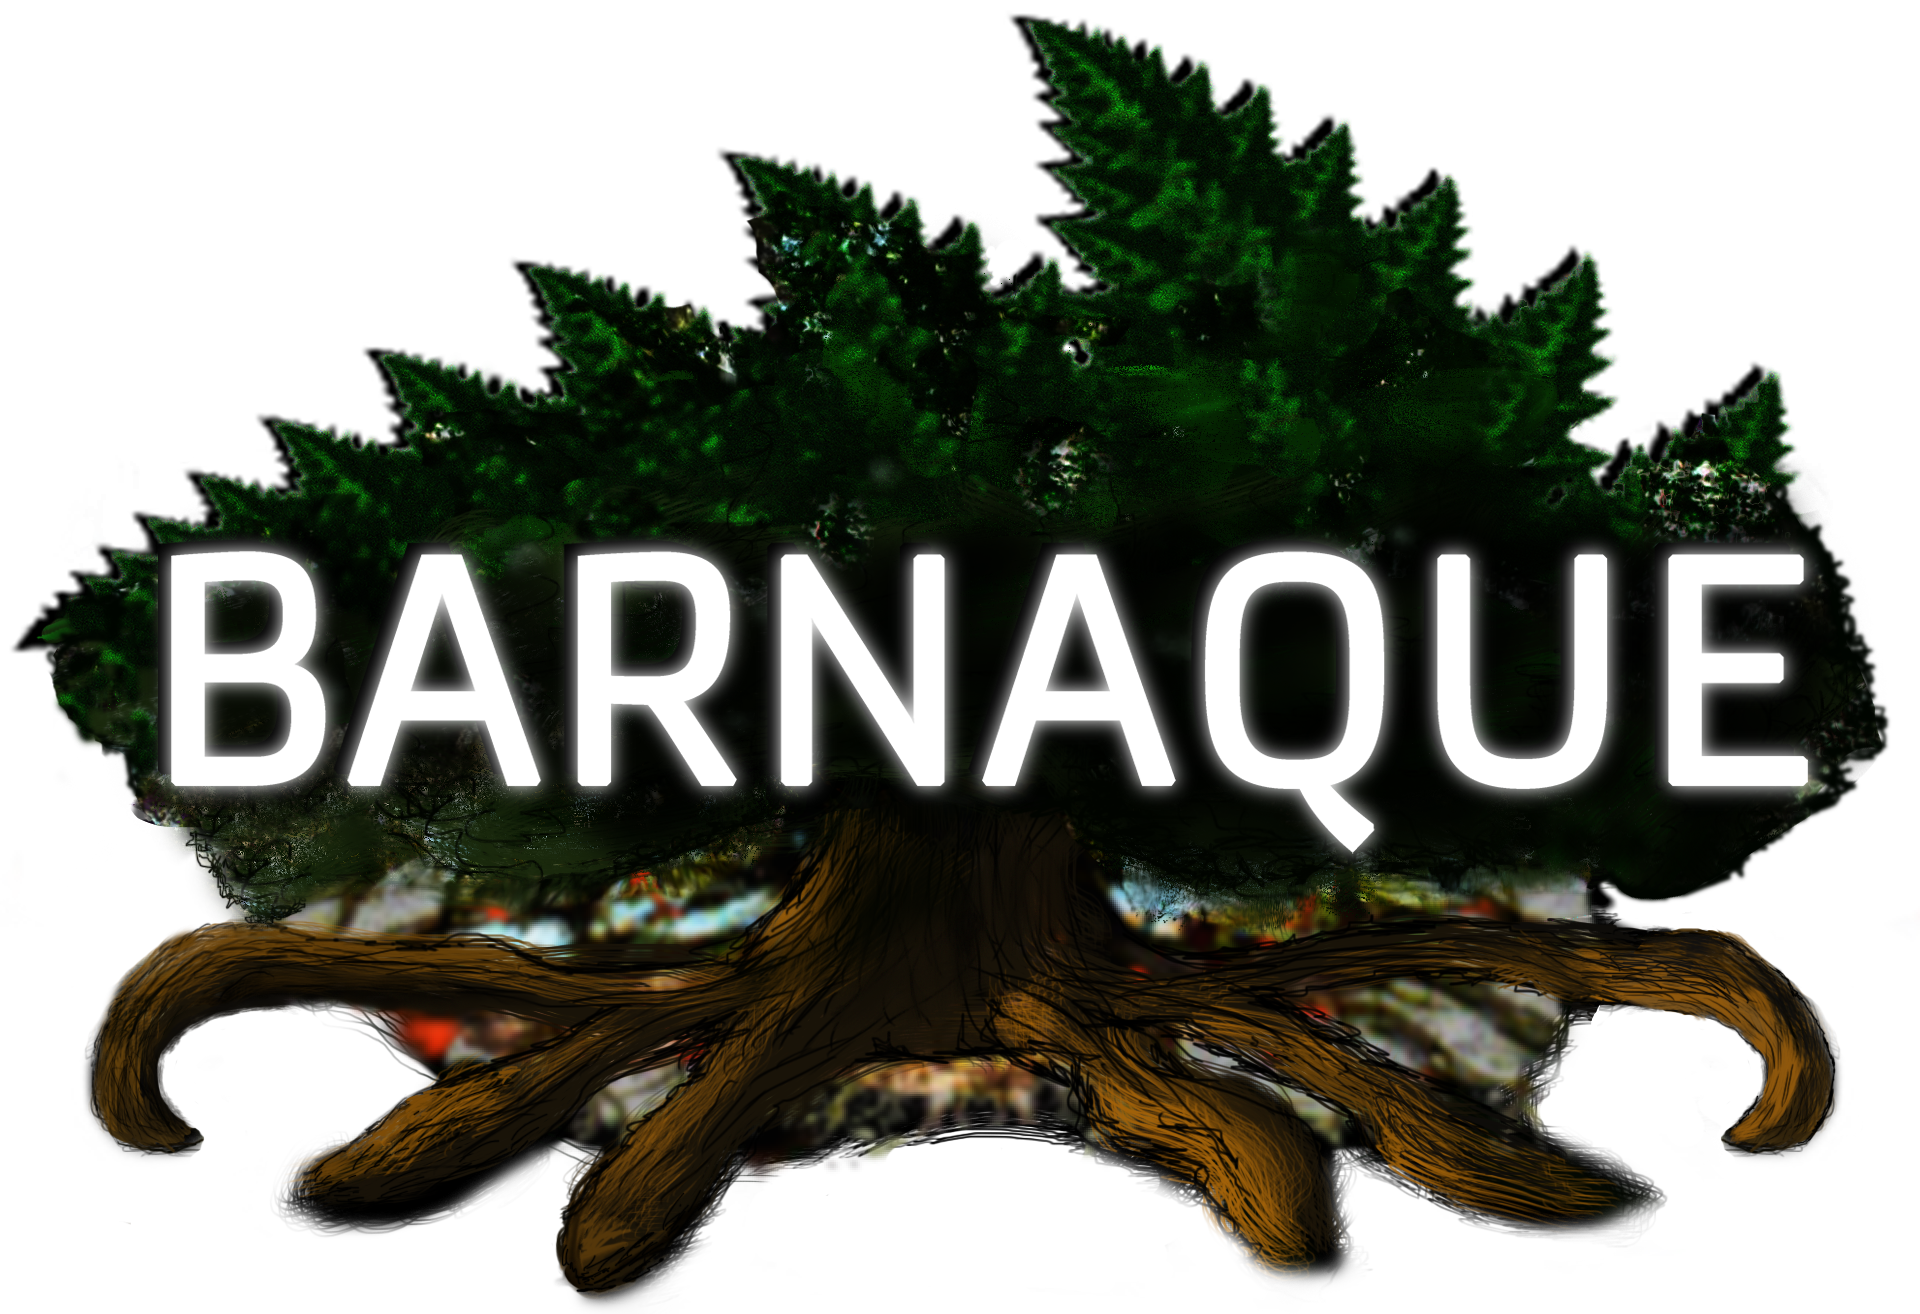 Barnaque